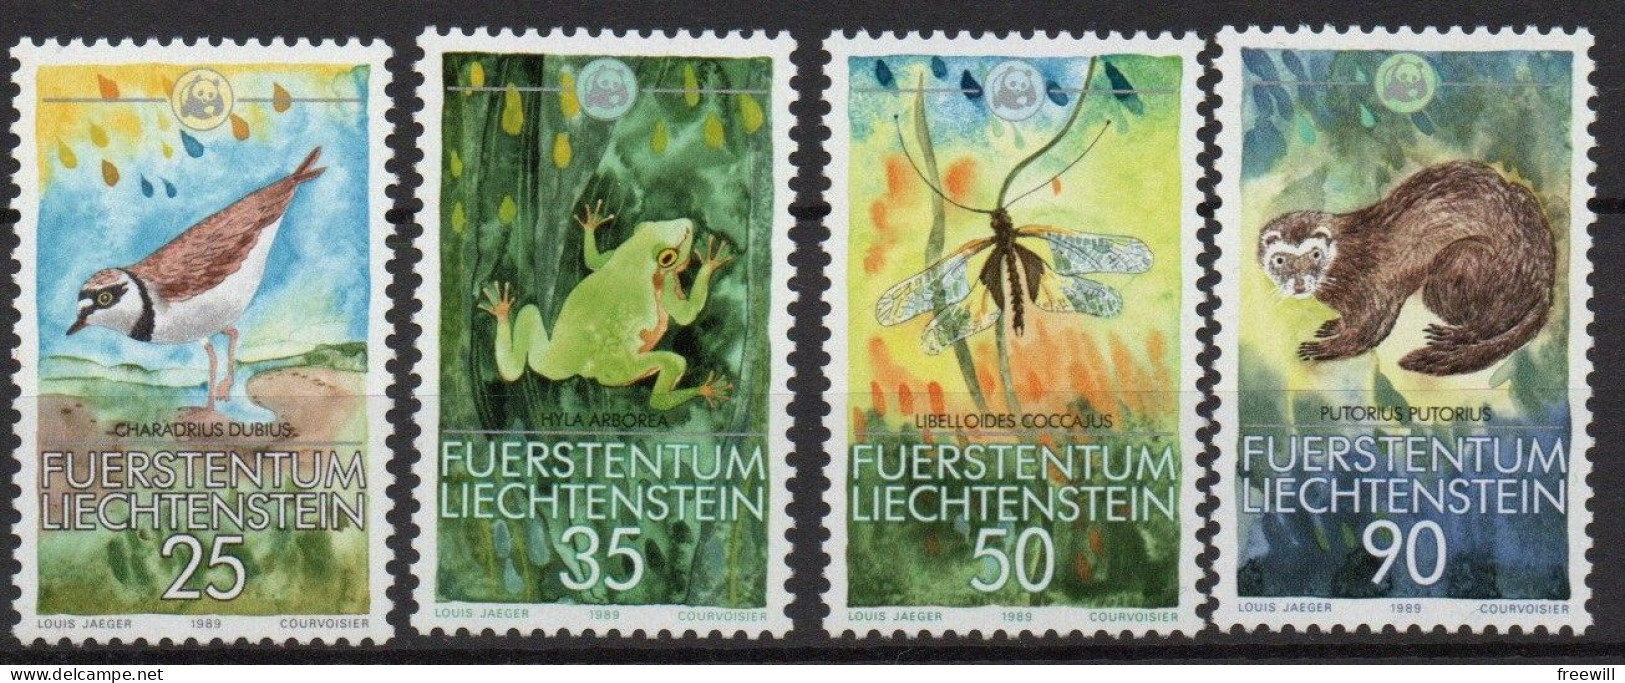 Liechtenstein 1989 Animaux- Dieren- Animals MNH - Unused Stamps